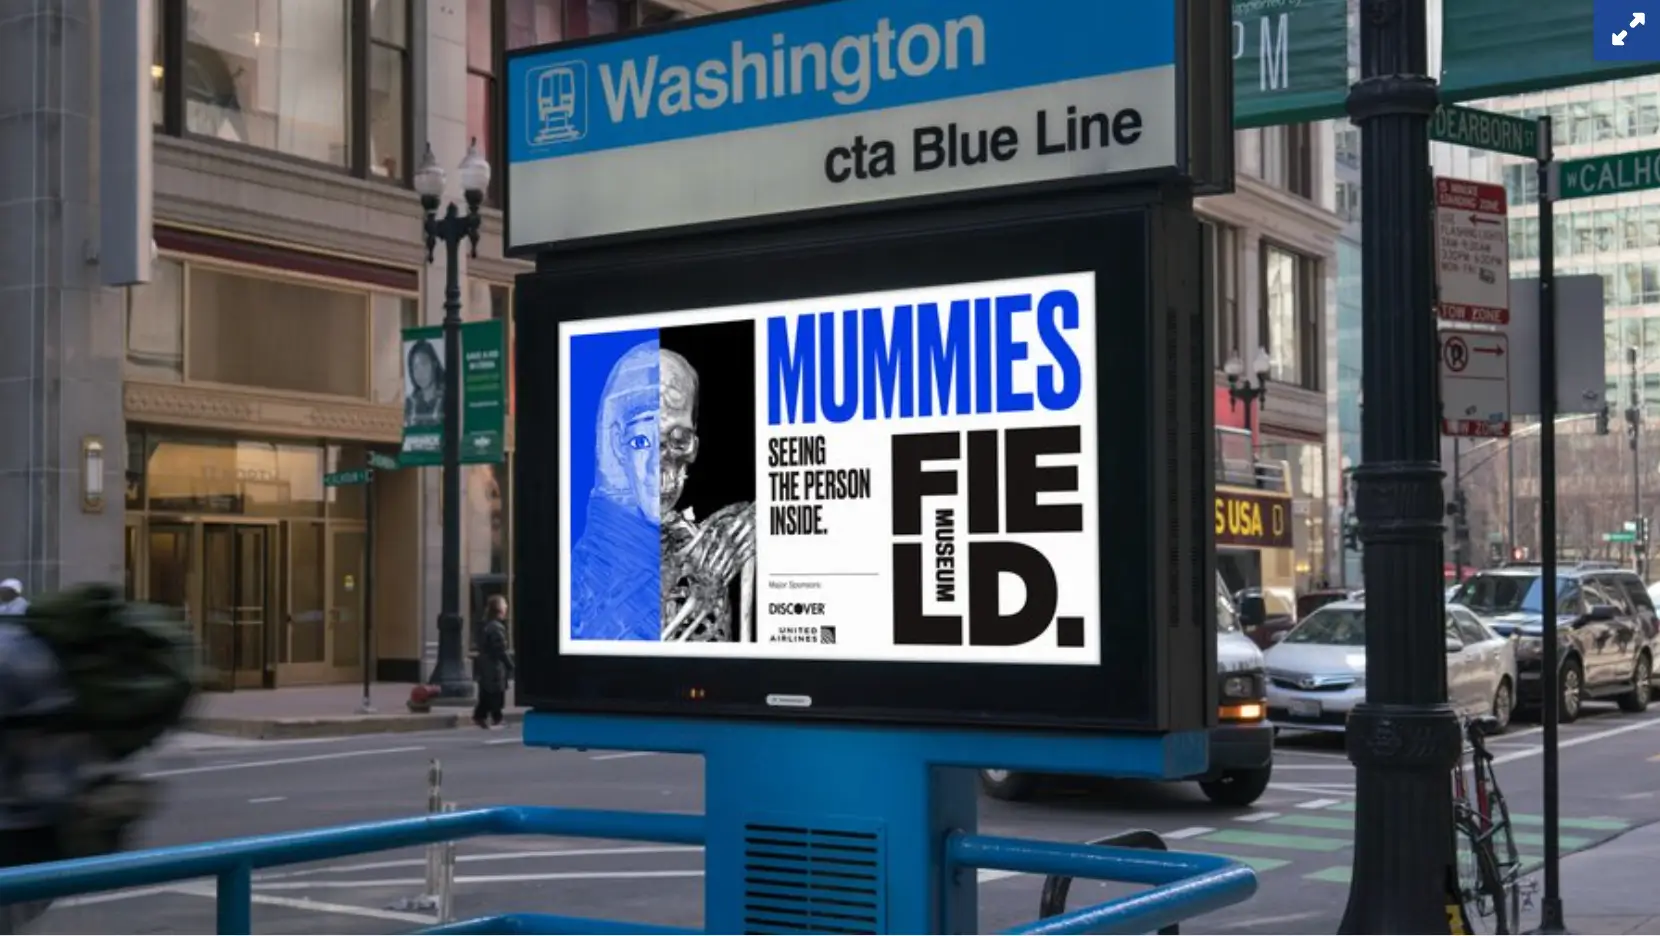 Bu resim, Chicago'nun Field Museum'un 2018'deki mumya sergisine yönelik kampanyasını gösteriyor; ilgi yaratmak ve müzeye ziyaretçi çekmek için geleneksel reklamları sosyal medya içeriğiyle harmanlıyor.